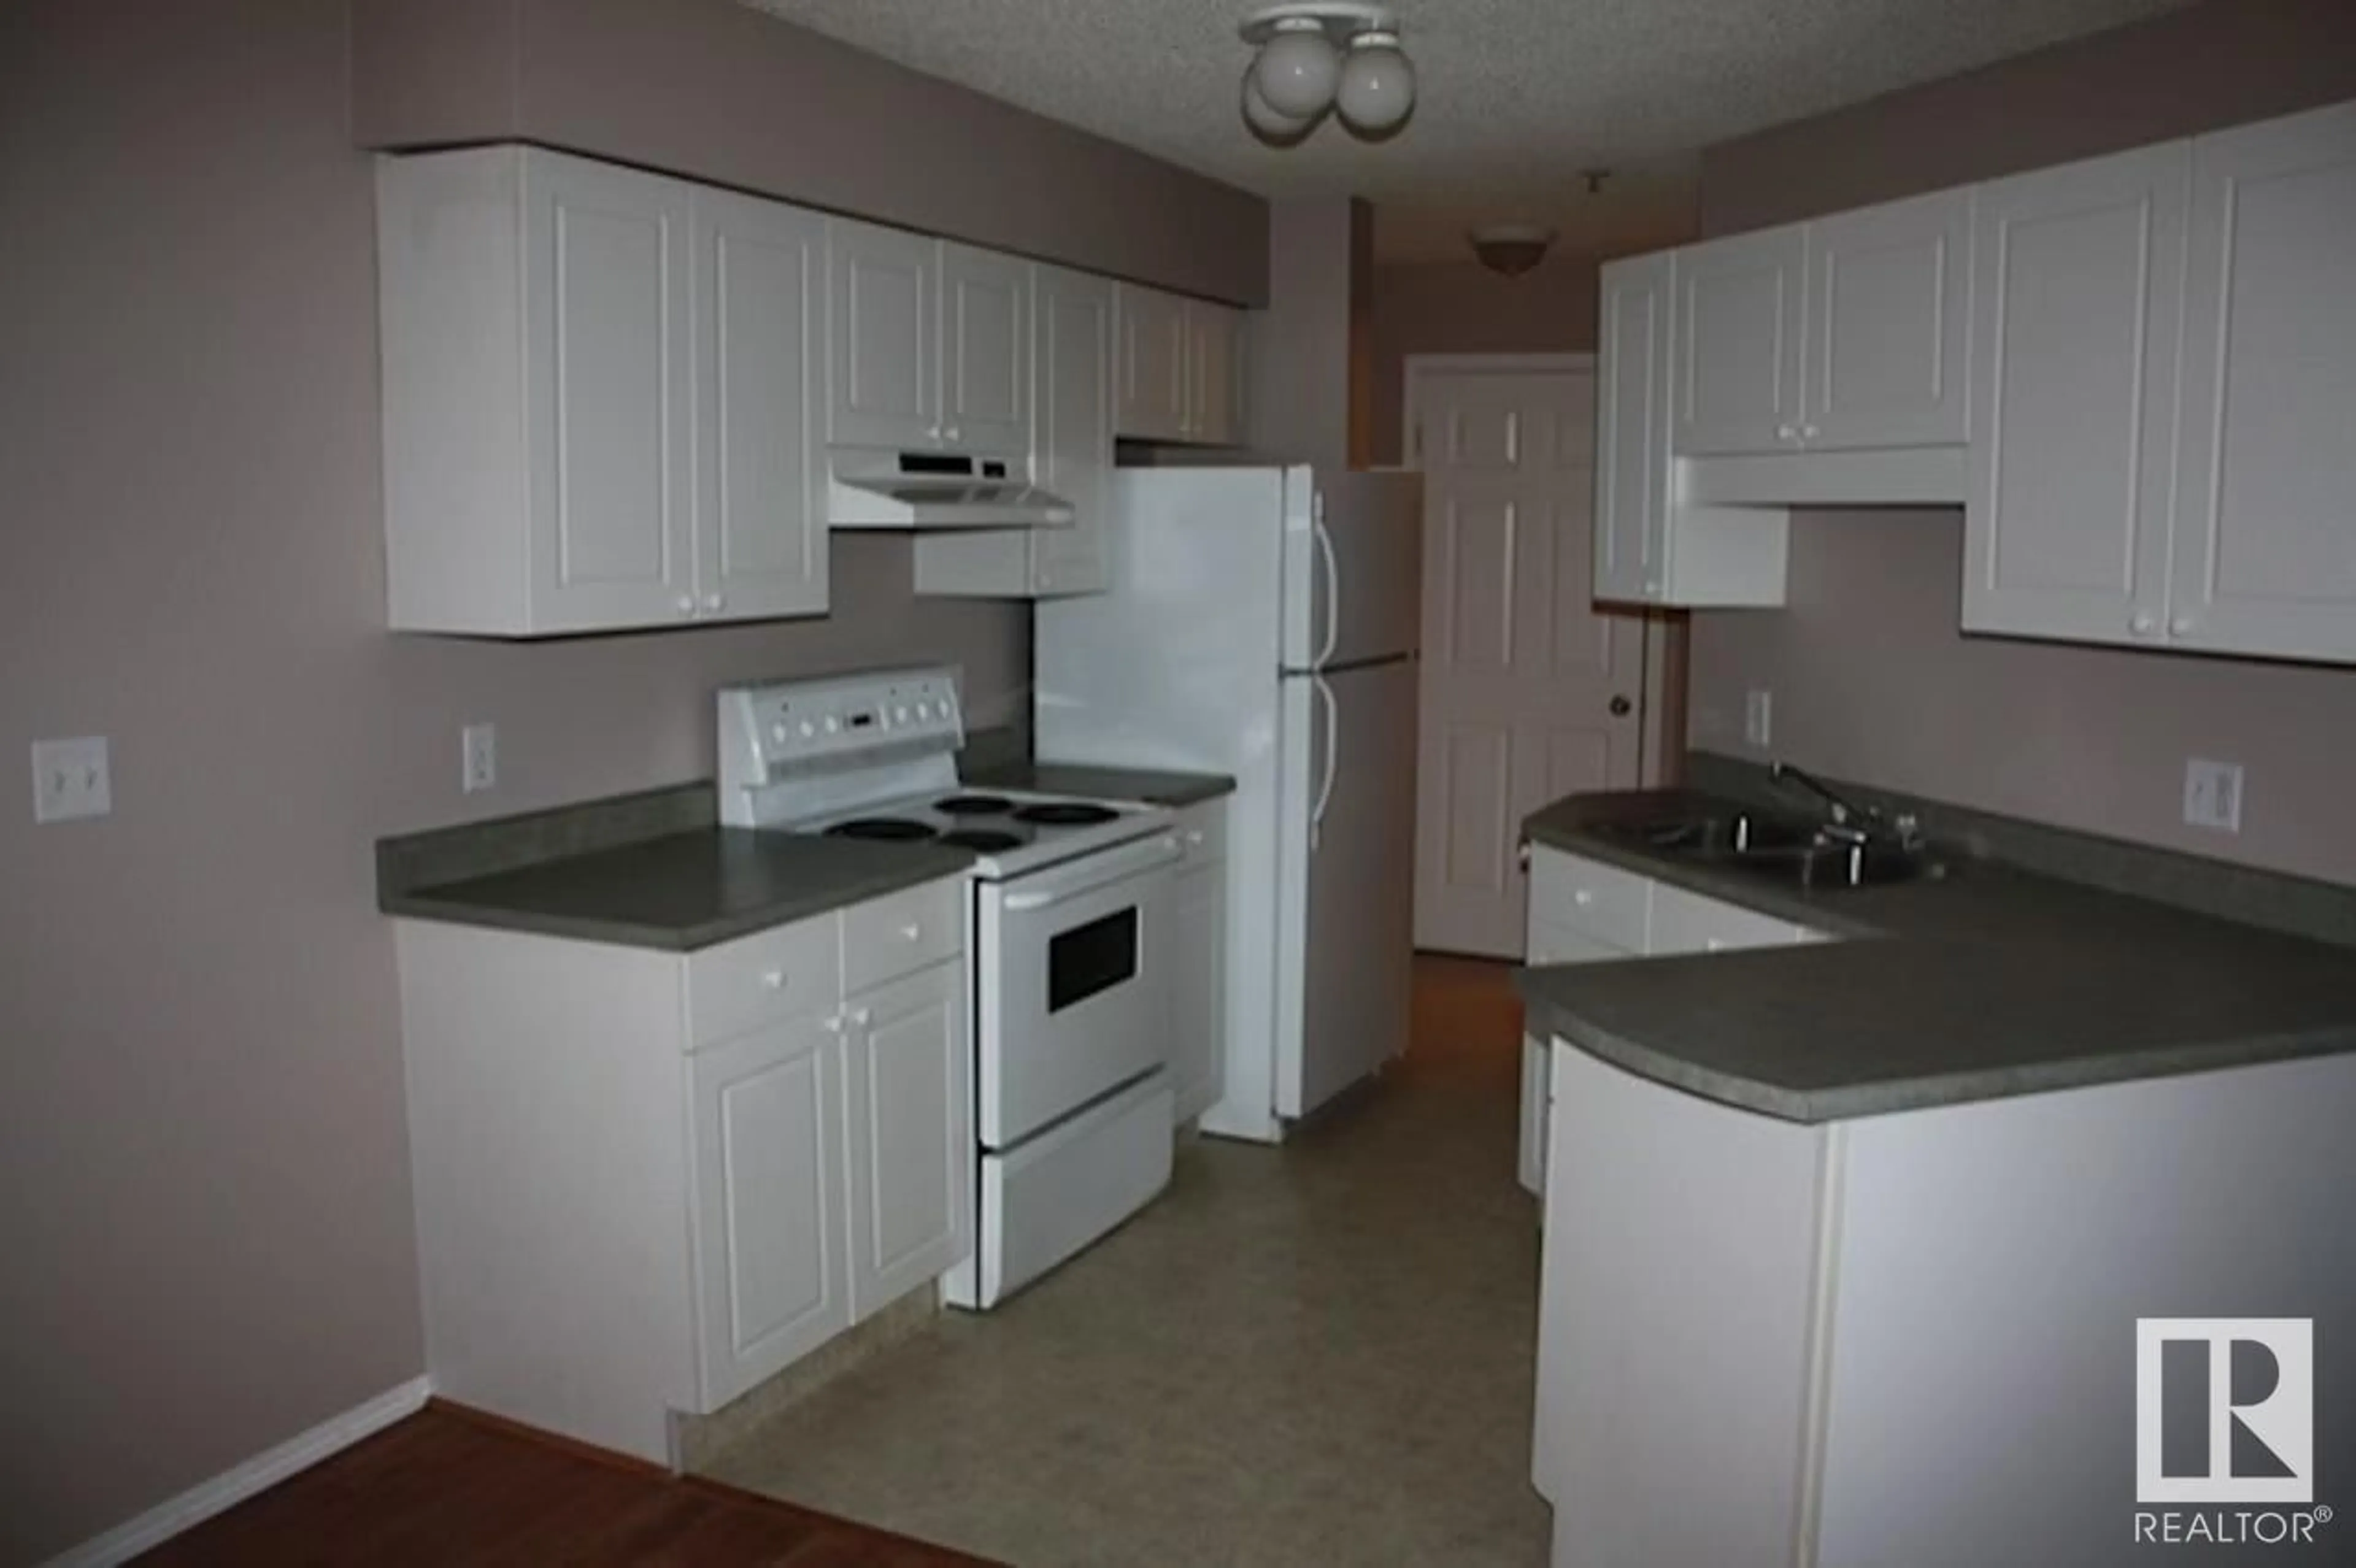 Standard kitchen for #203 12110 119 AV NW, Edmonton Alberta T5L5G9